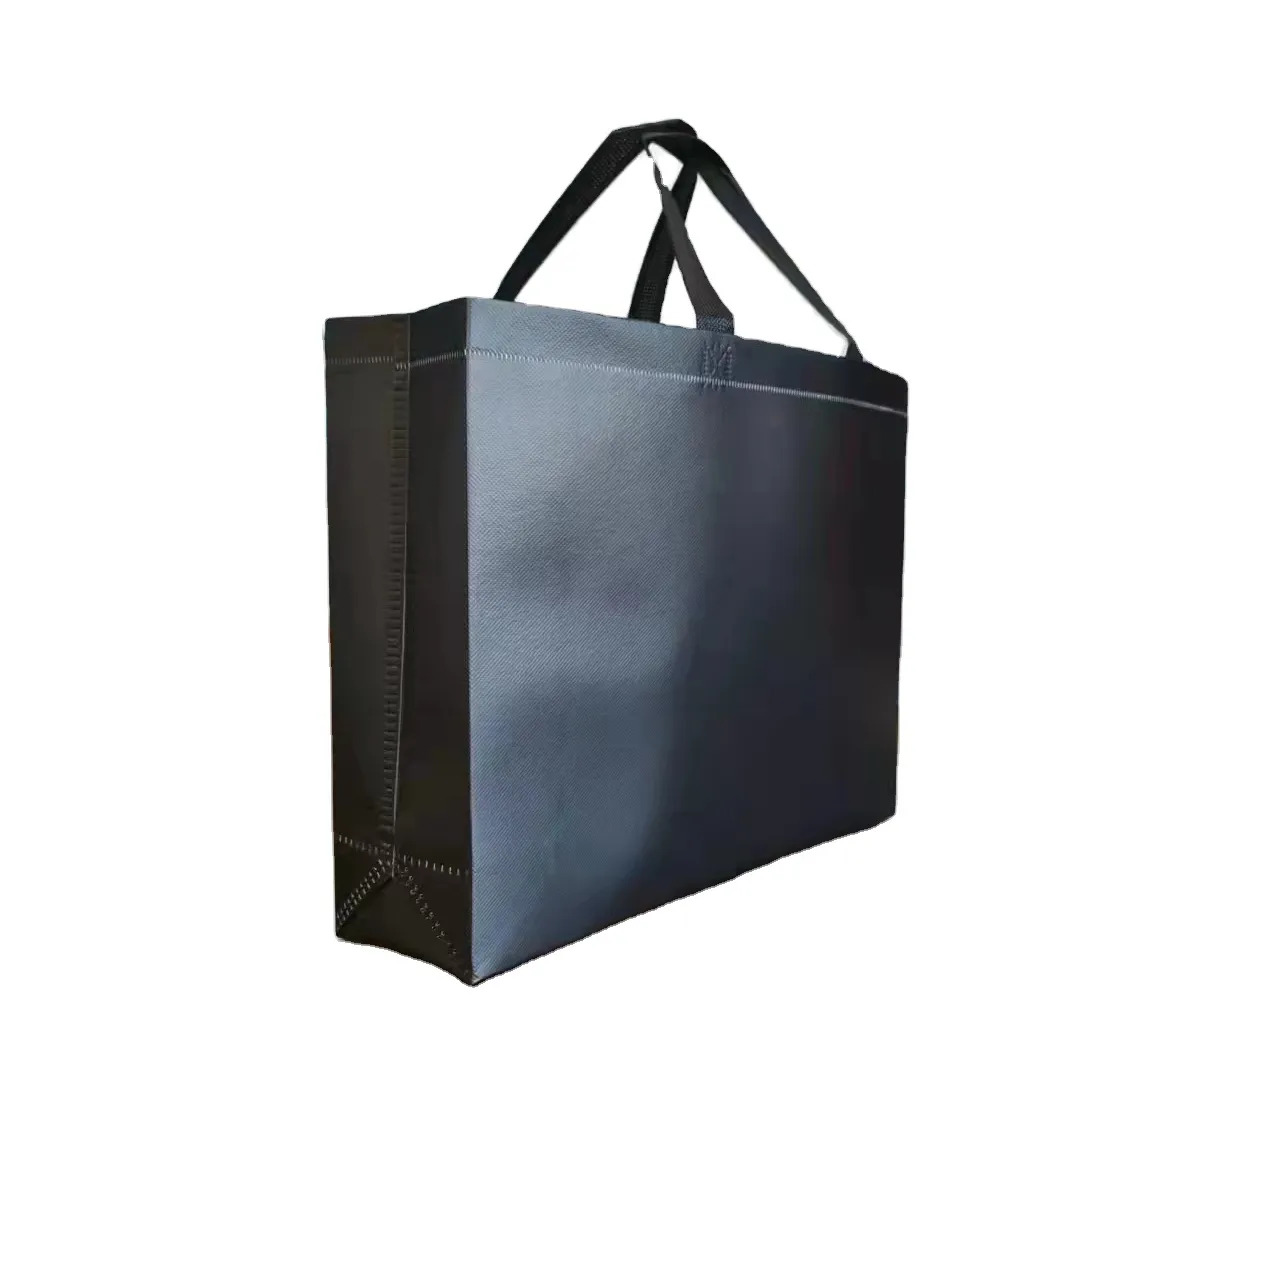 사용자 정의 금속 색상 적층 재사용 가방 쇼핑 가방 환경 보호 내구성 부직포 가방, 마크 groce